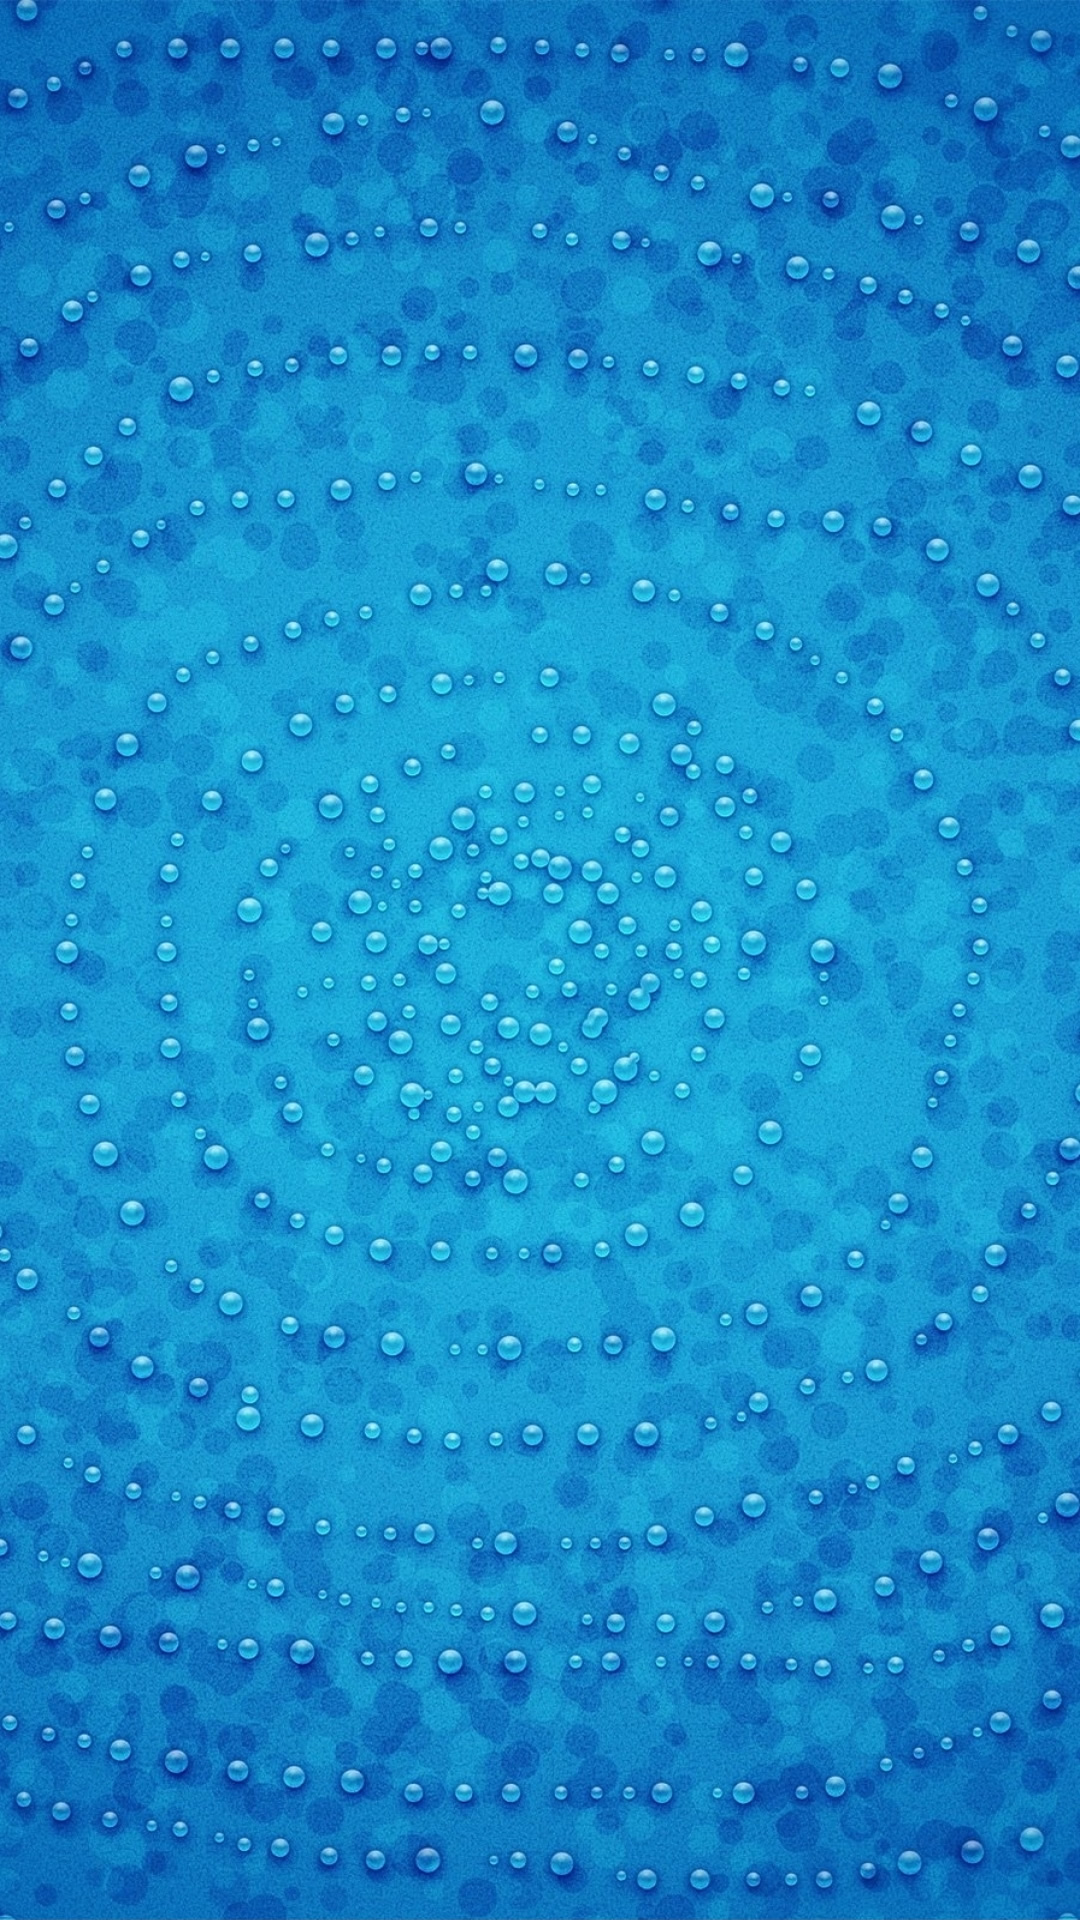 青の抽象的な芸術的なパターンのスマホ壁紙 1080 19 テクスチャ Iphoneチーズ